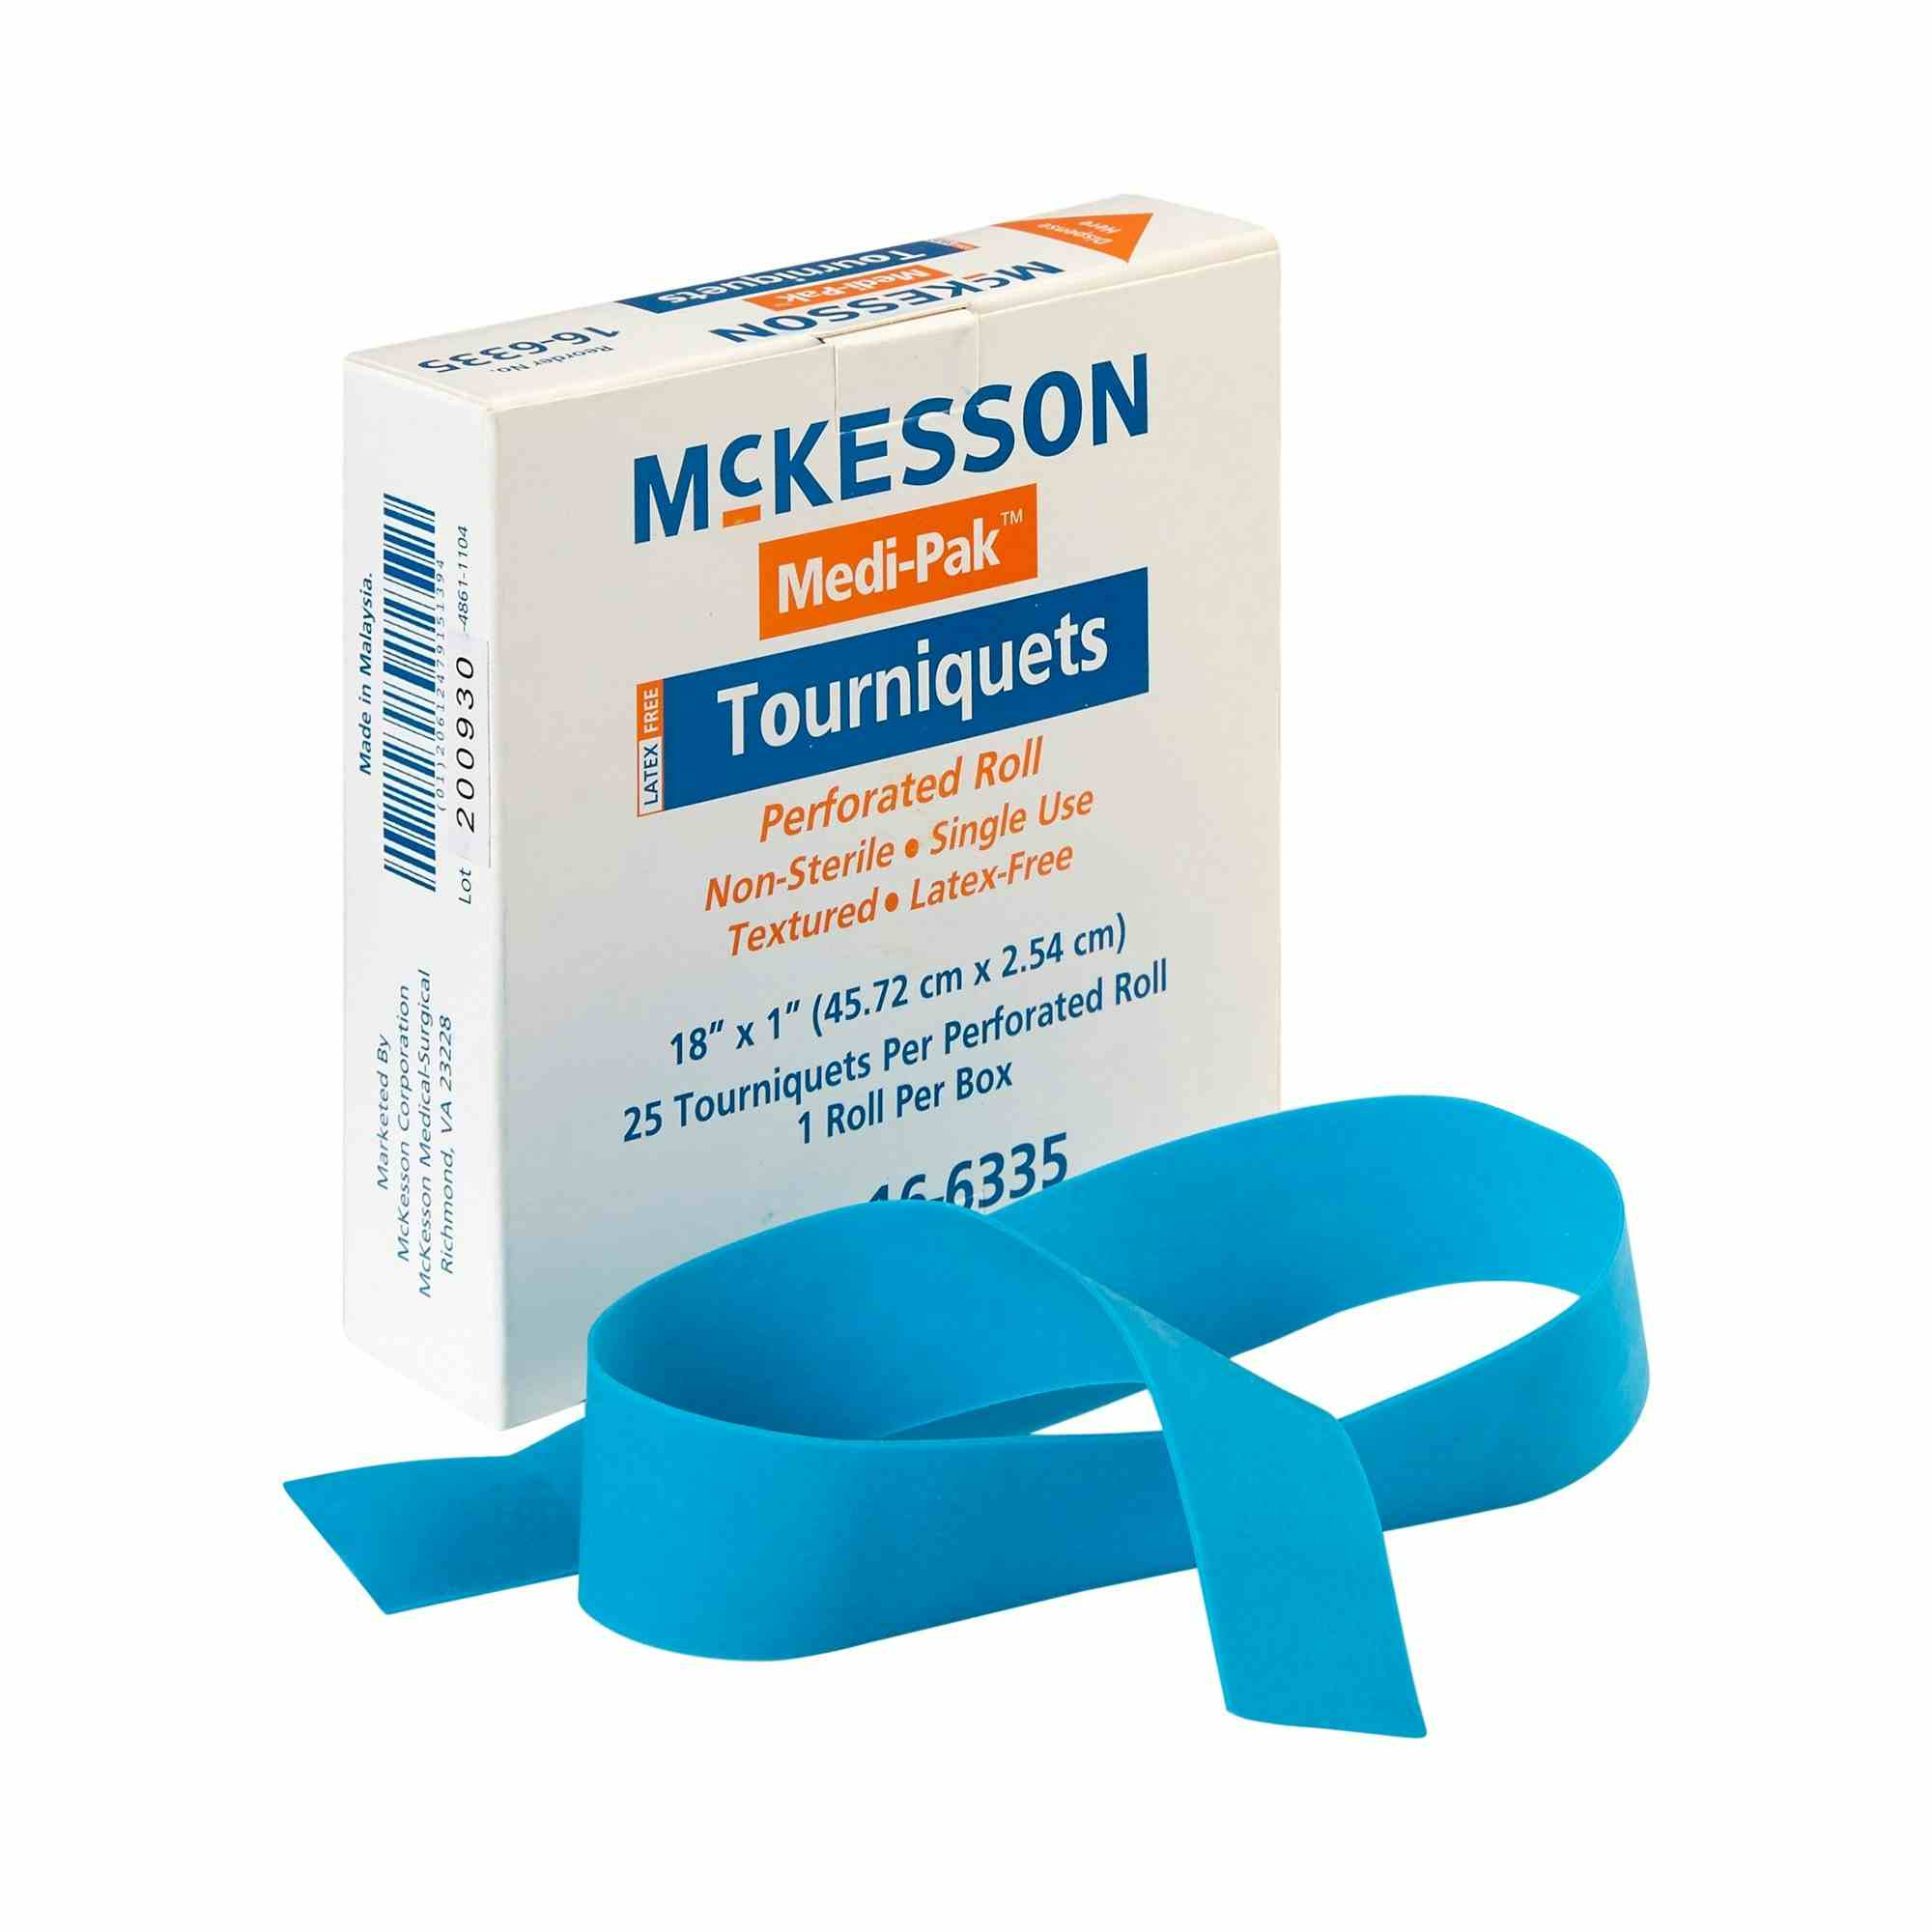 McKesson Medi-Pak Tourniquet, Perforated Roll, 18 X 1", 16-6335, Box of 25